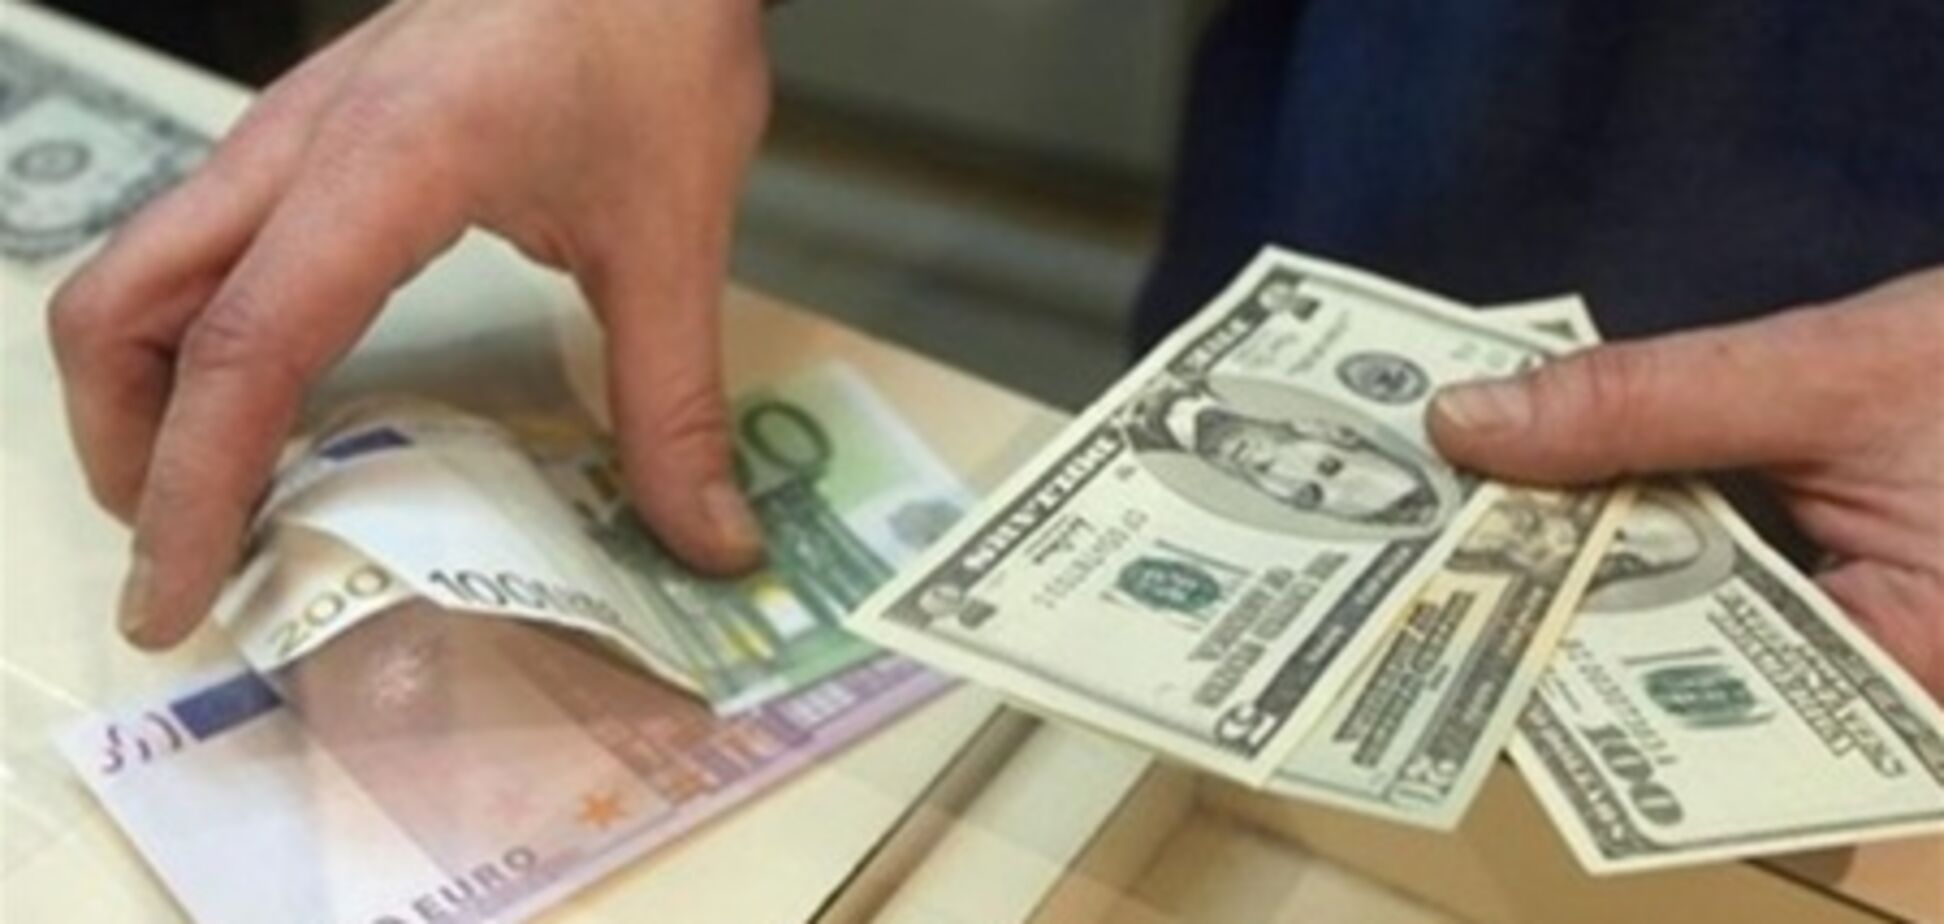 Вкладчики банка 'Таврика' получили 1 млрд грн